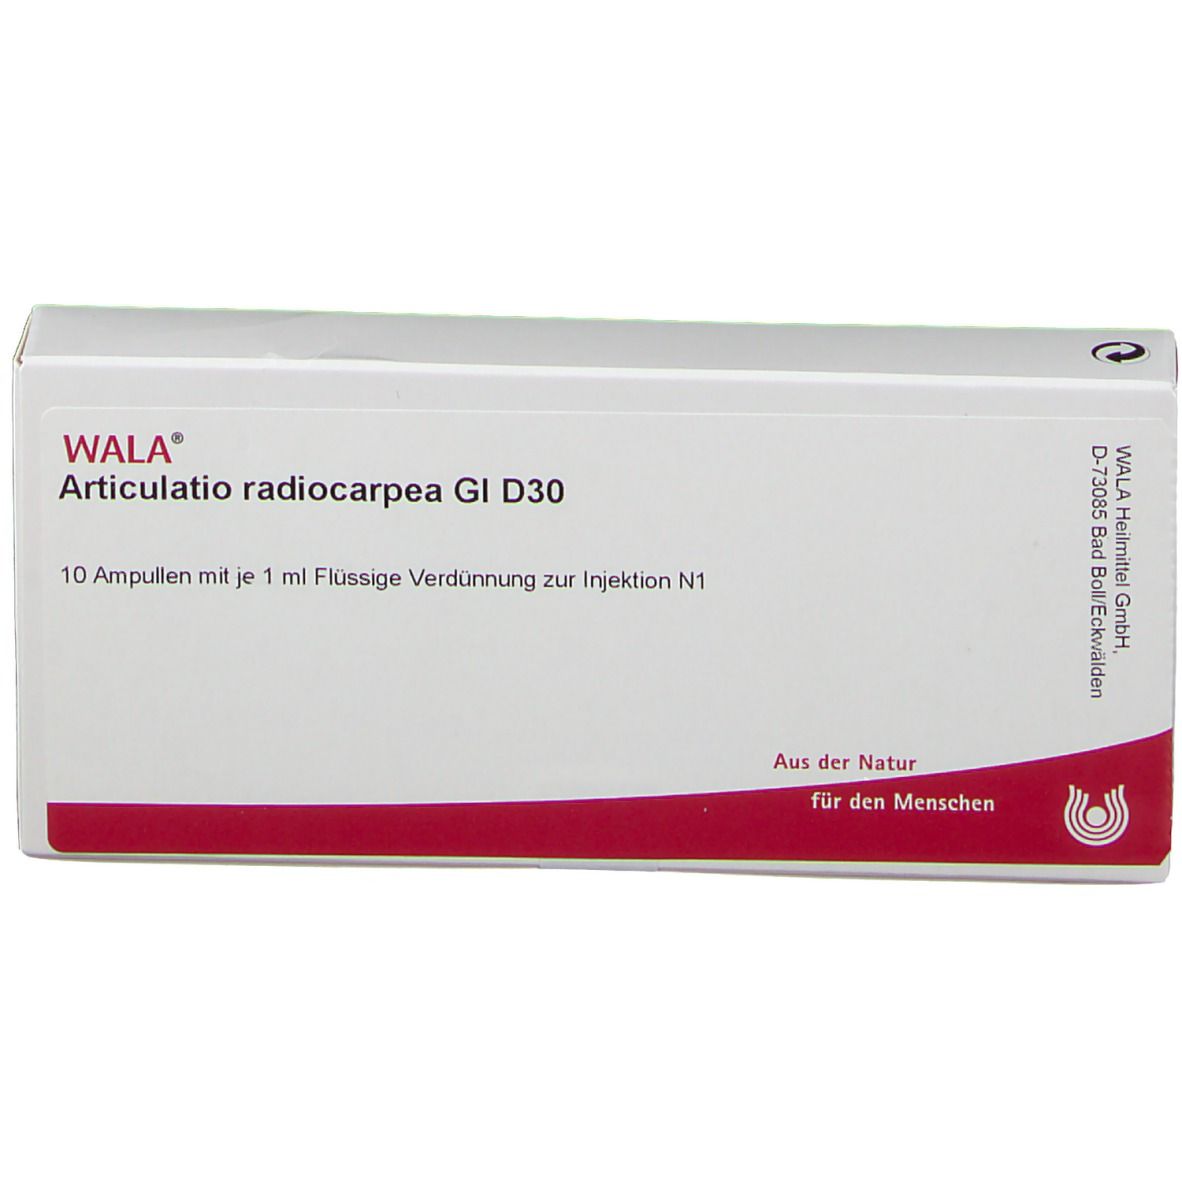 WALA® Articulatio radiocarpea Gl D 30